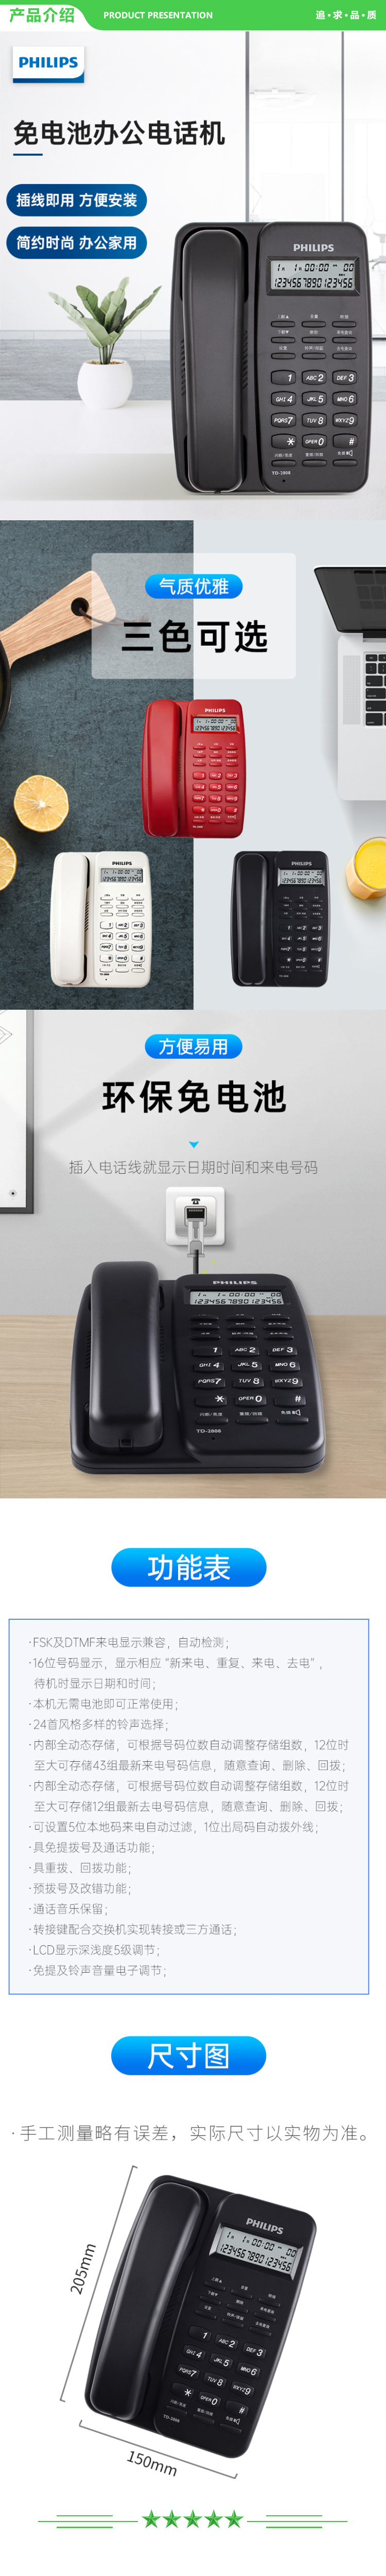 飞利浦 PHILIPS TD-2808 电话机座机 固定电话 免电池设计 来电显示 (白色)  .jpg